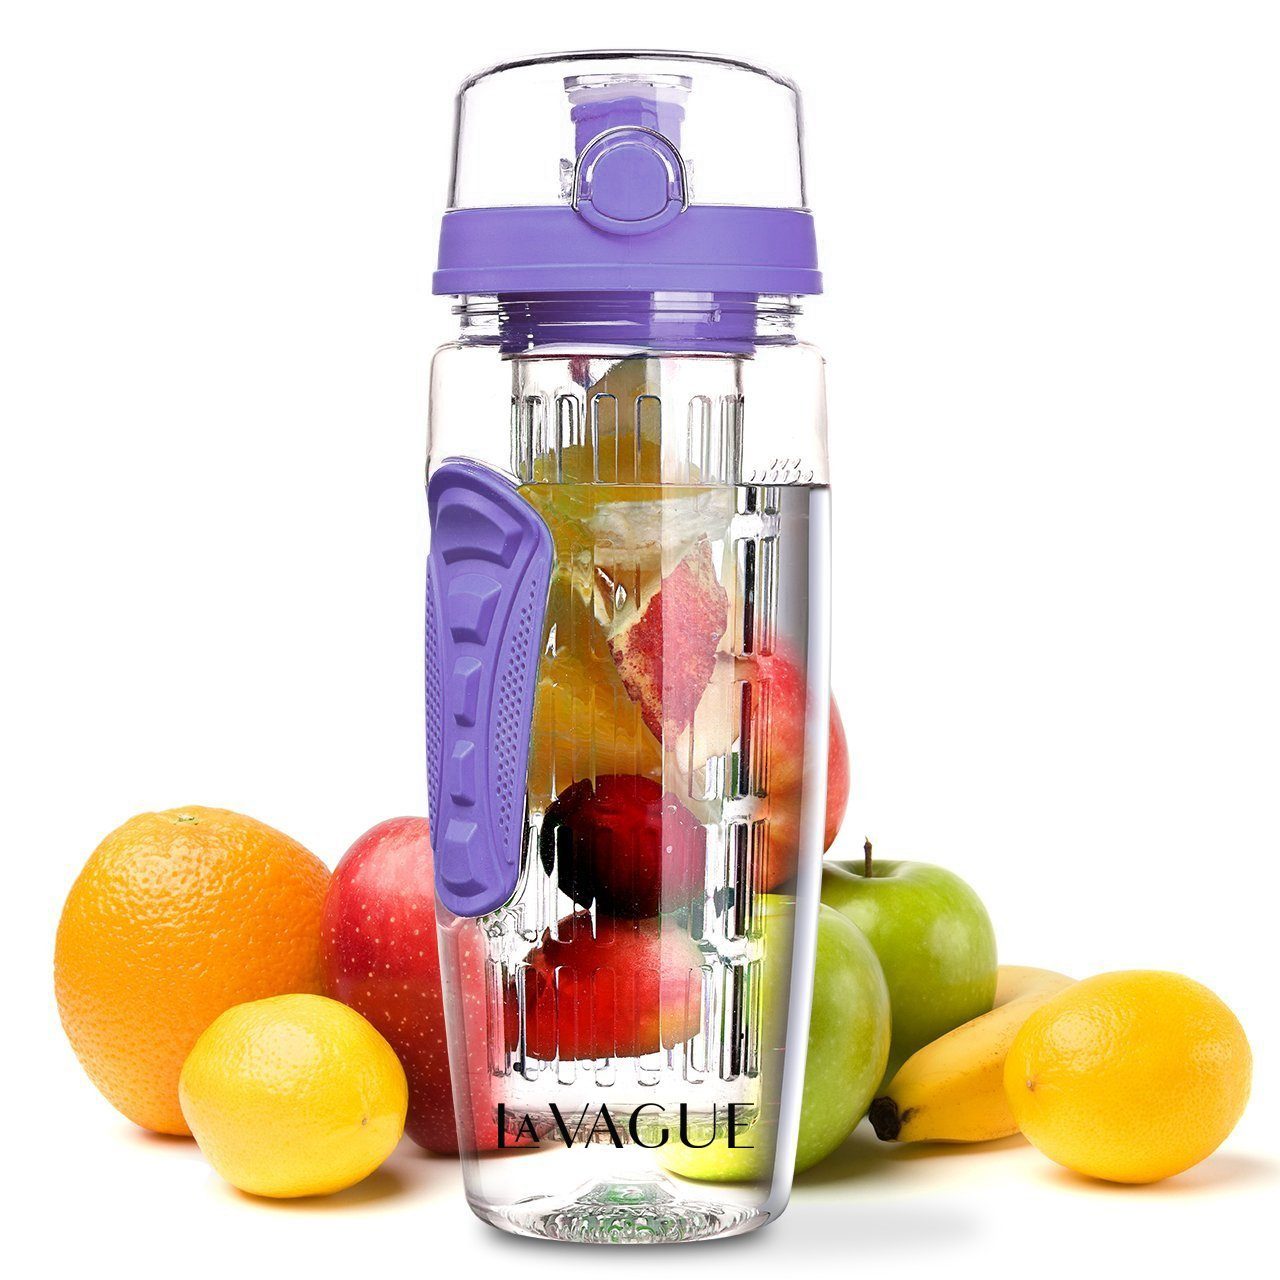 LA VAGUE Trinkflasche VITALITY trinkflasche mit einsatz, Trinkflasche mit Früchtesieb für perfekt aromatisierte Getränke lila